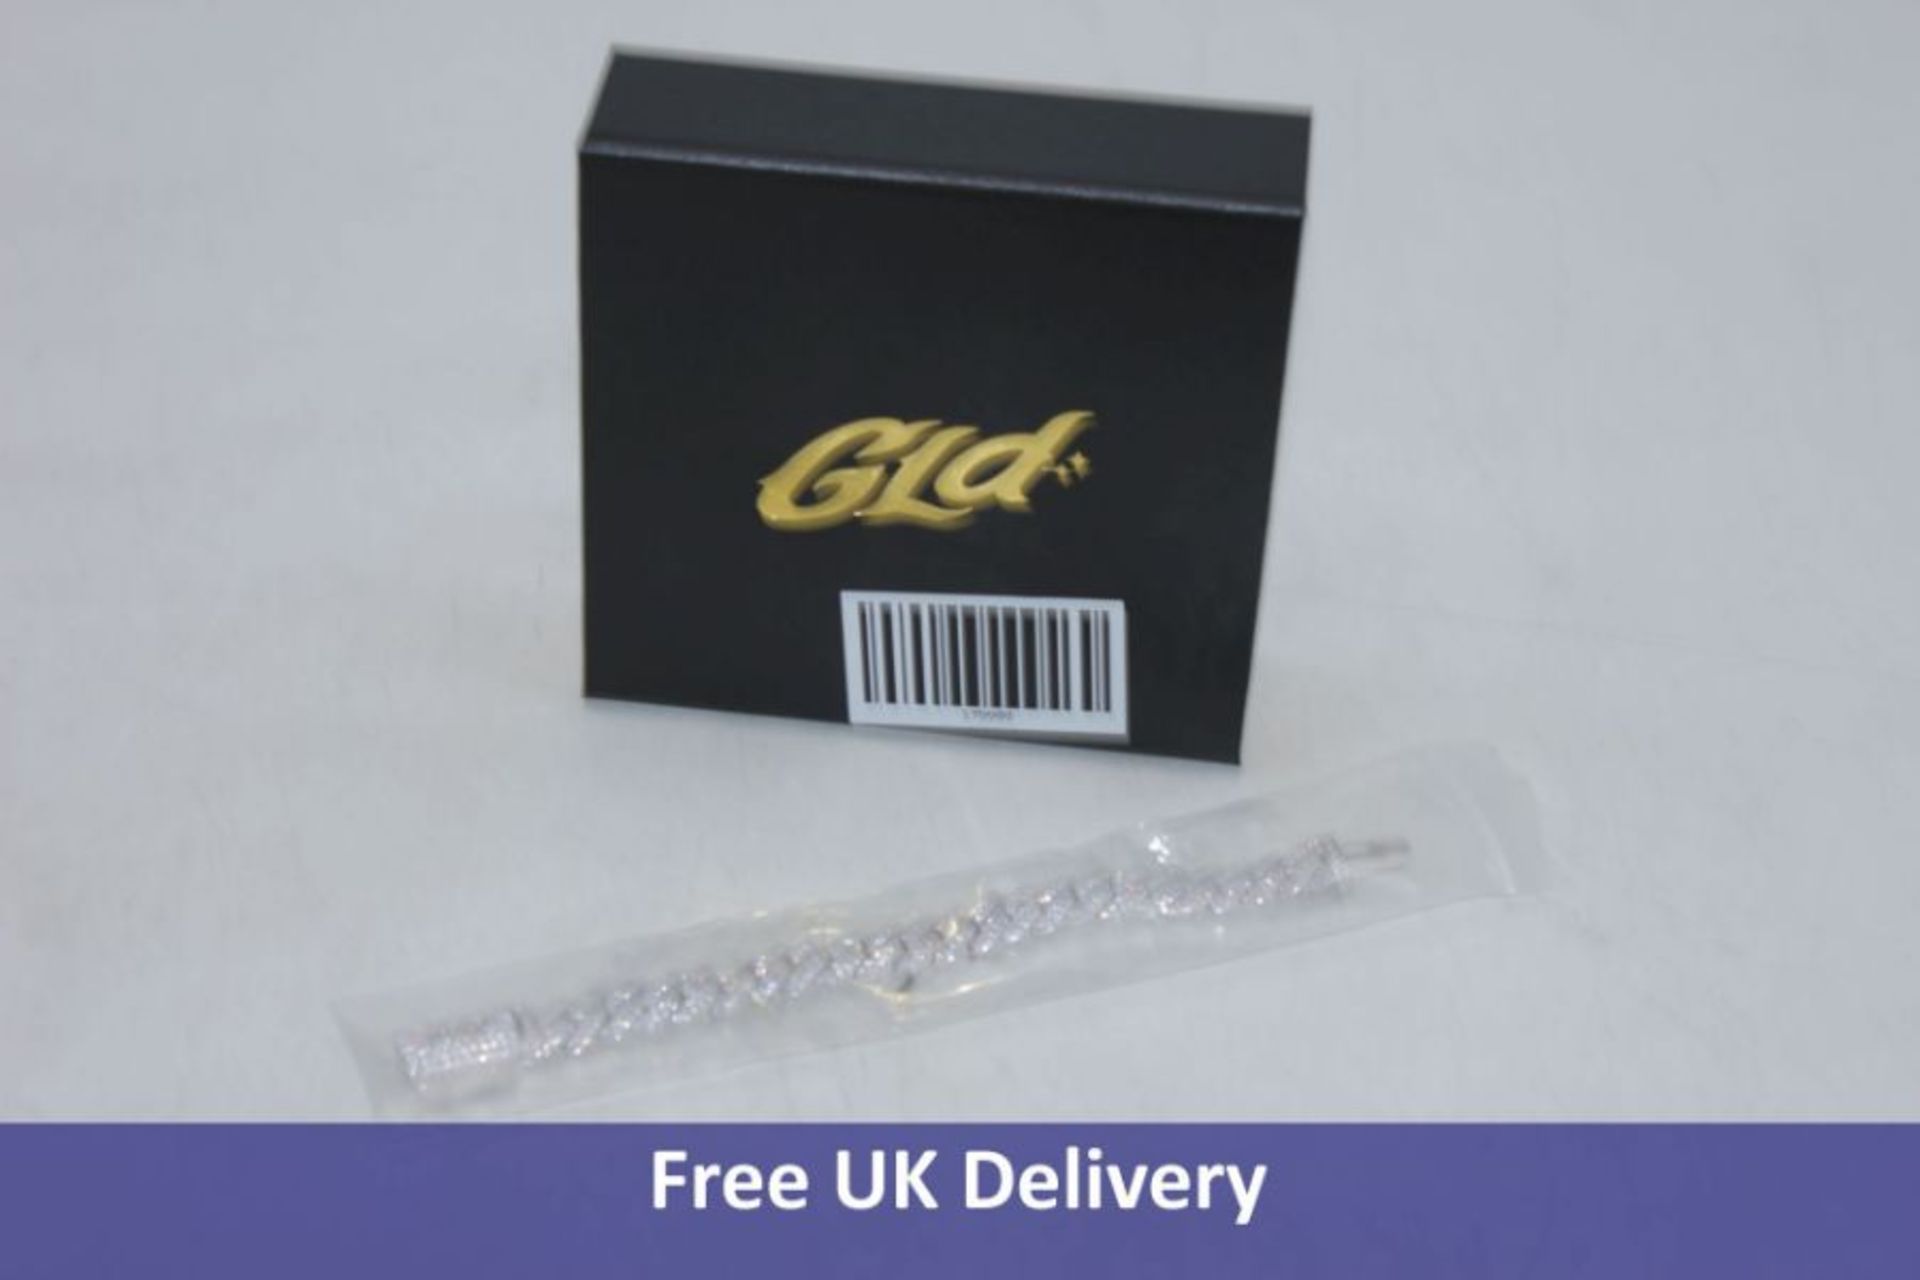 GLD Diamond Prong Link Bracelet 14K, White/Gold, Size 10mm